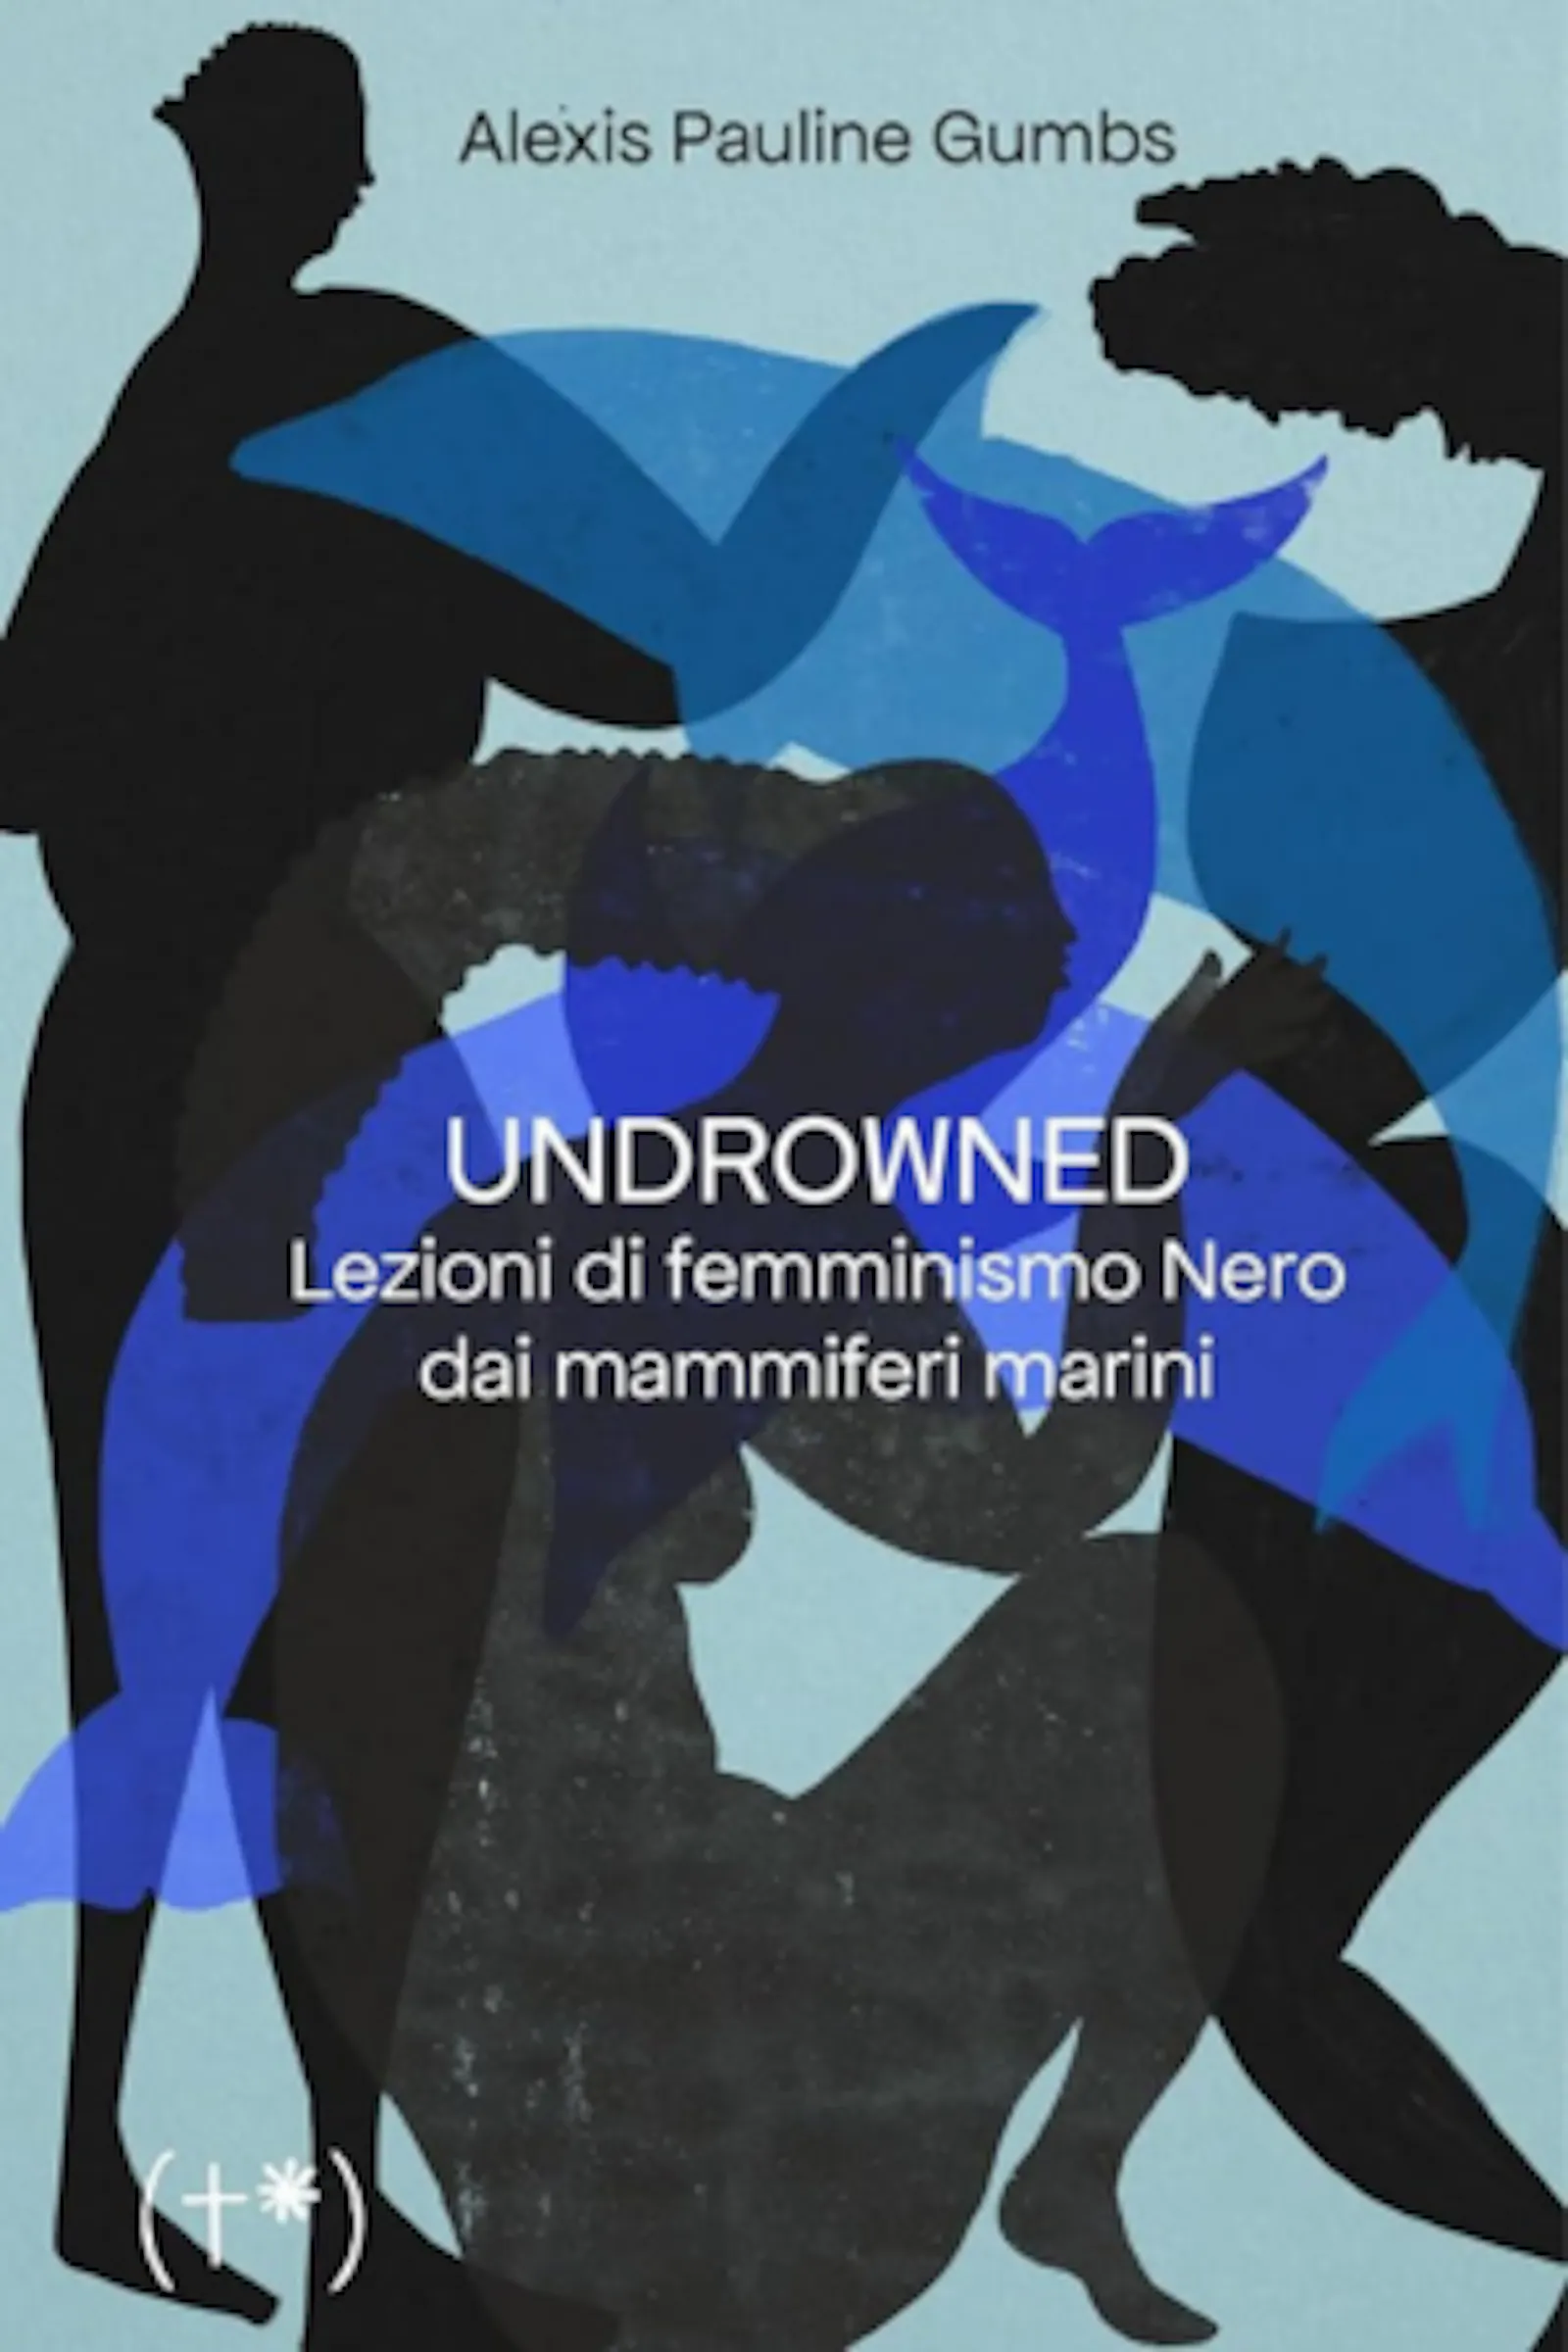 La copertina del libro "Undrowned. Lezioni di femminismo Nero dai mammiferi marini" di Alexis Pauline Gumbs. Un'illustrazione che vede donne e delfini (entrambi stilizzati) mescolarsi in sfumature di blu, nero e azzurro.